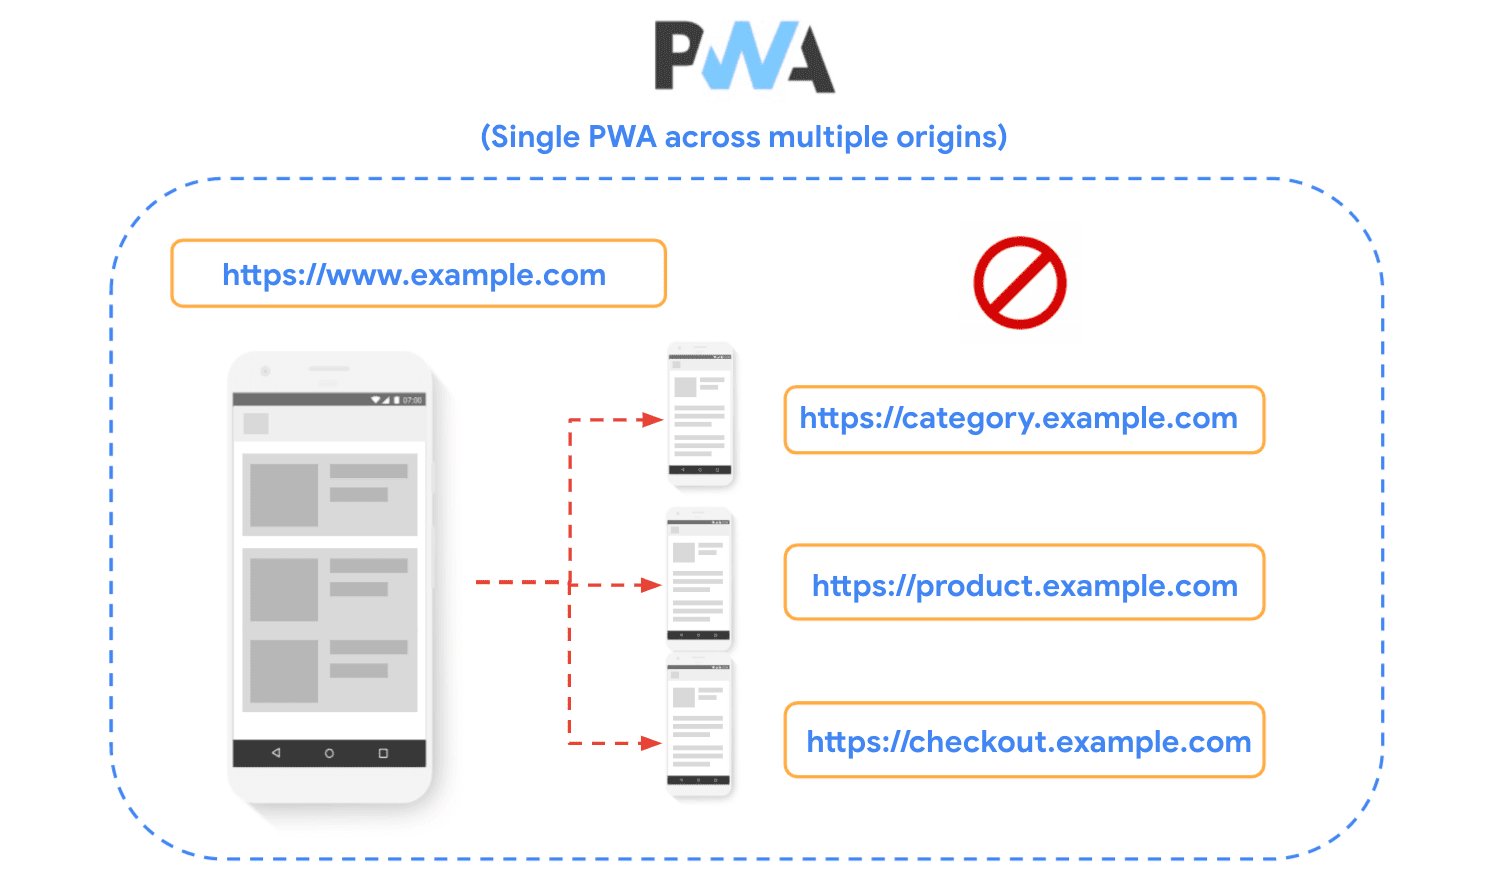 رسم بياني يوضح موقعًا إلكترونيًا مقسمًا إلى مصادر متعددة ويوضح أنه لا يُنصح باستخدام هذا الأسلوب عند إنشاء تطبيقات الويب التقدّمية (PWA).